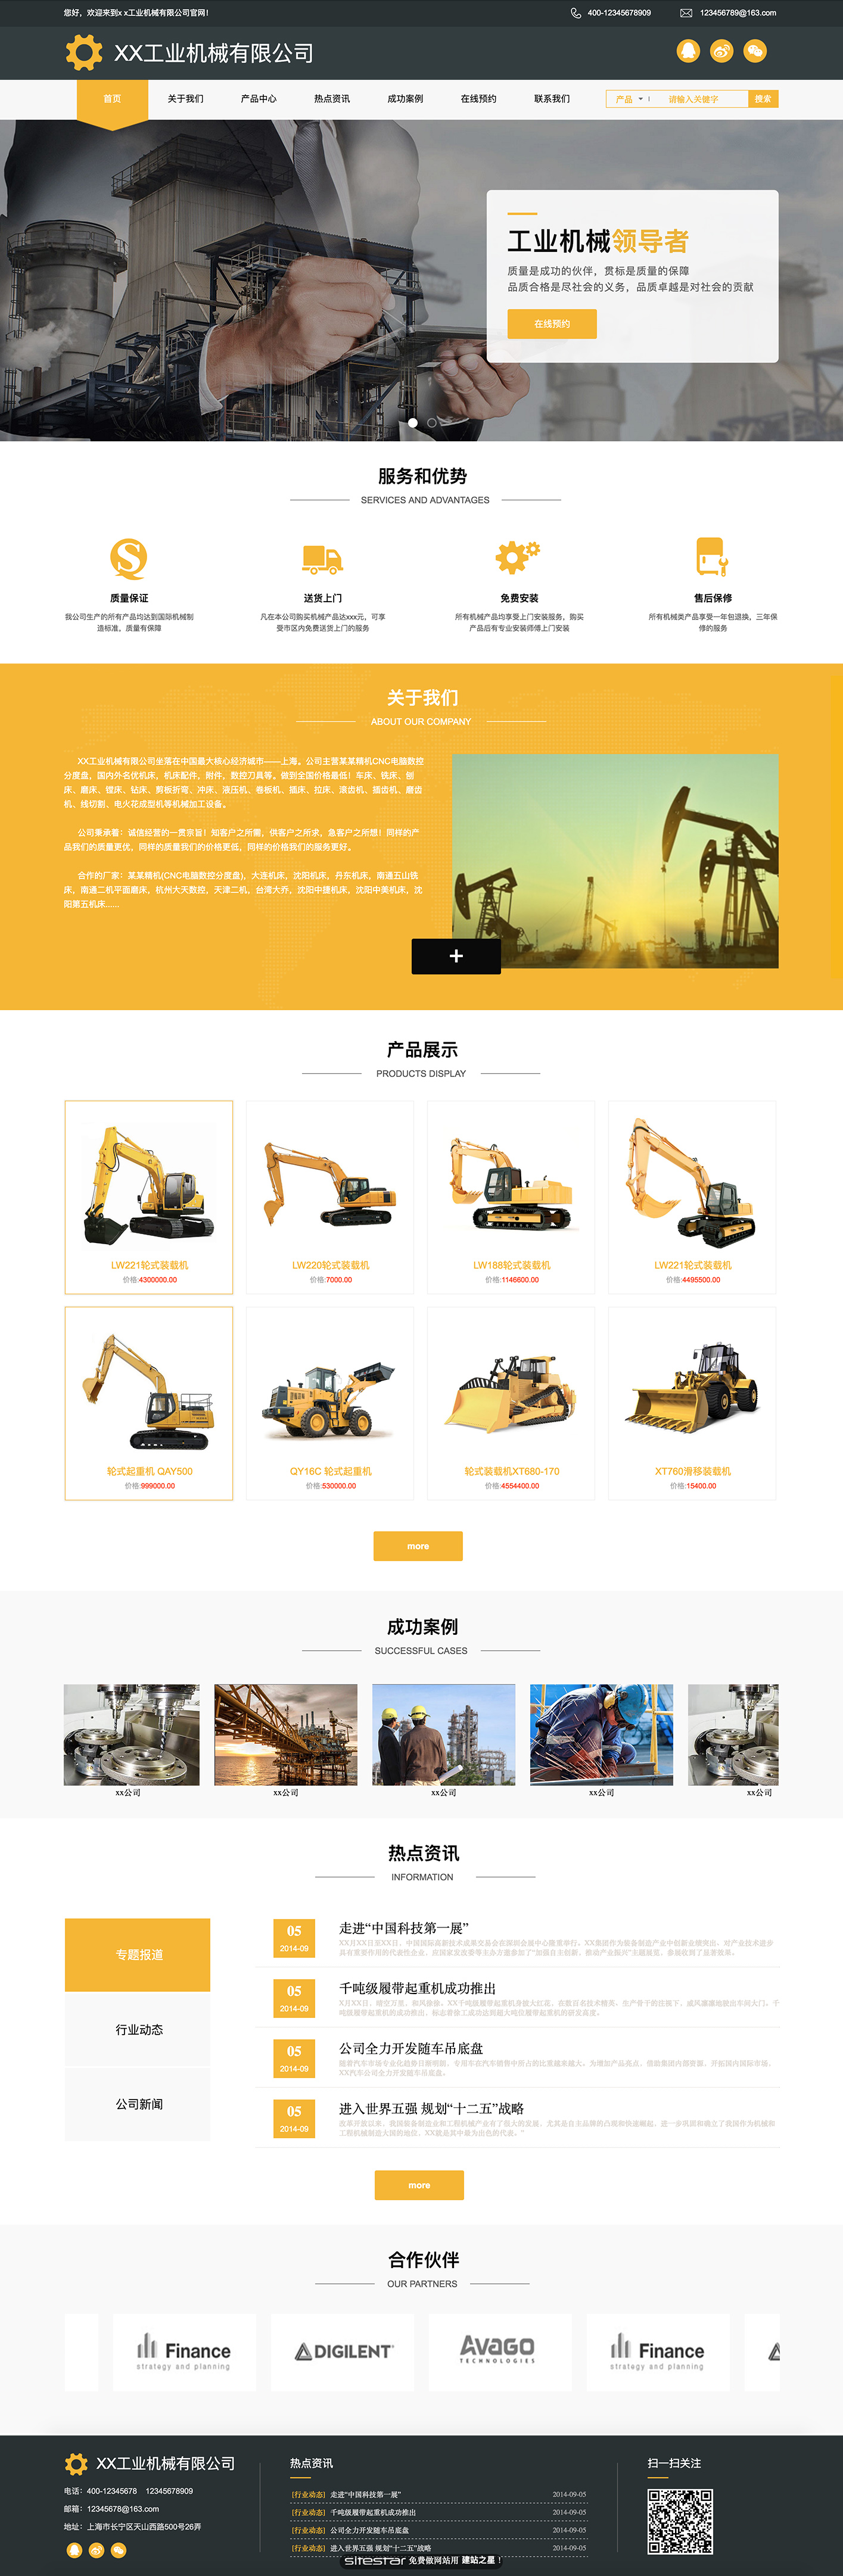 机械、工业制品网站模板-industrial-488